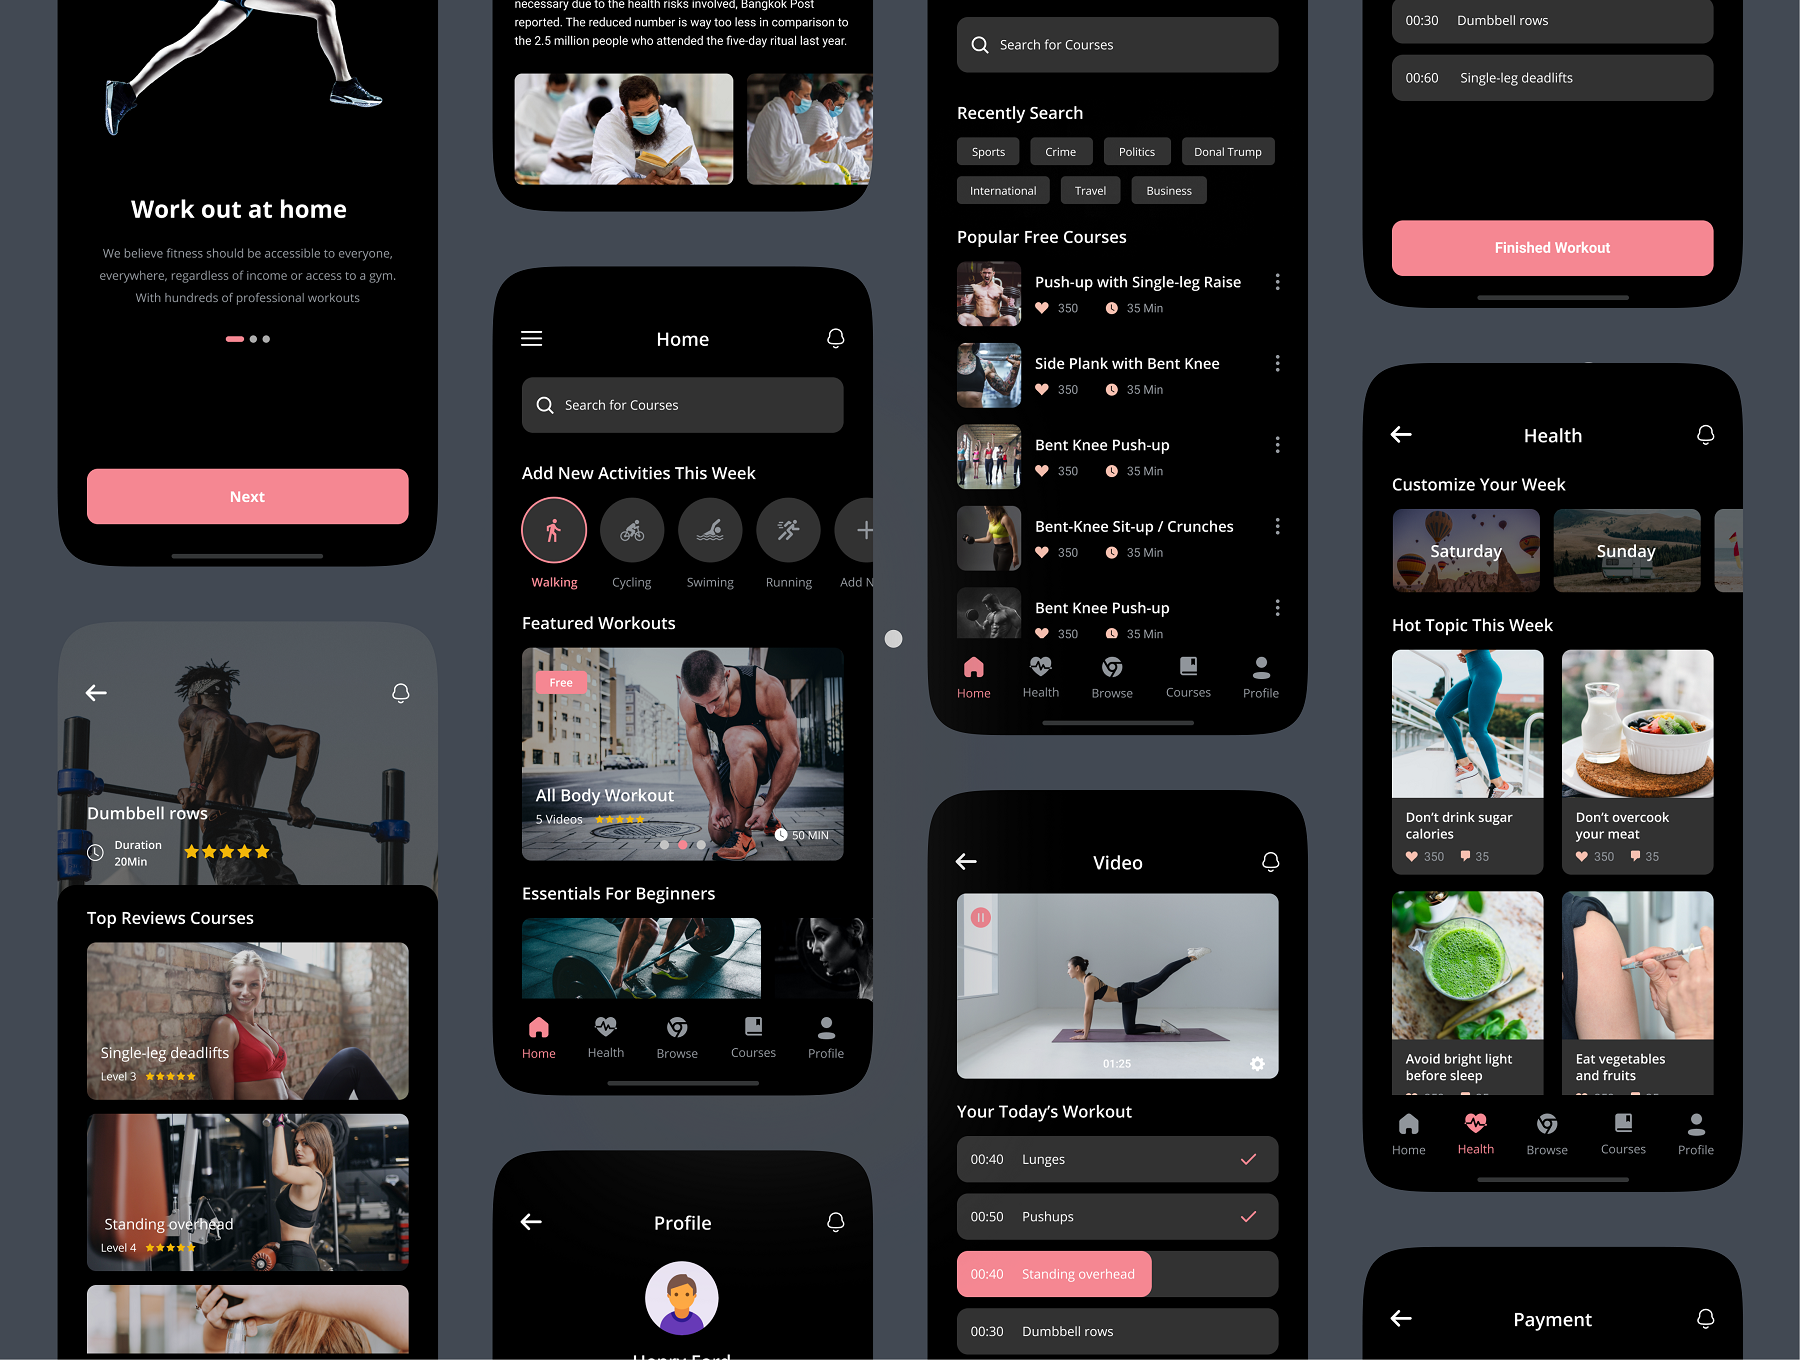 34 健身教学在线视频直播课程iOS用户手机ui设计sketch模板 Fitness & Workout App UI Kit 34